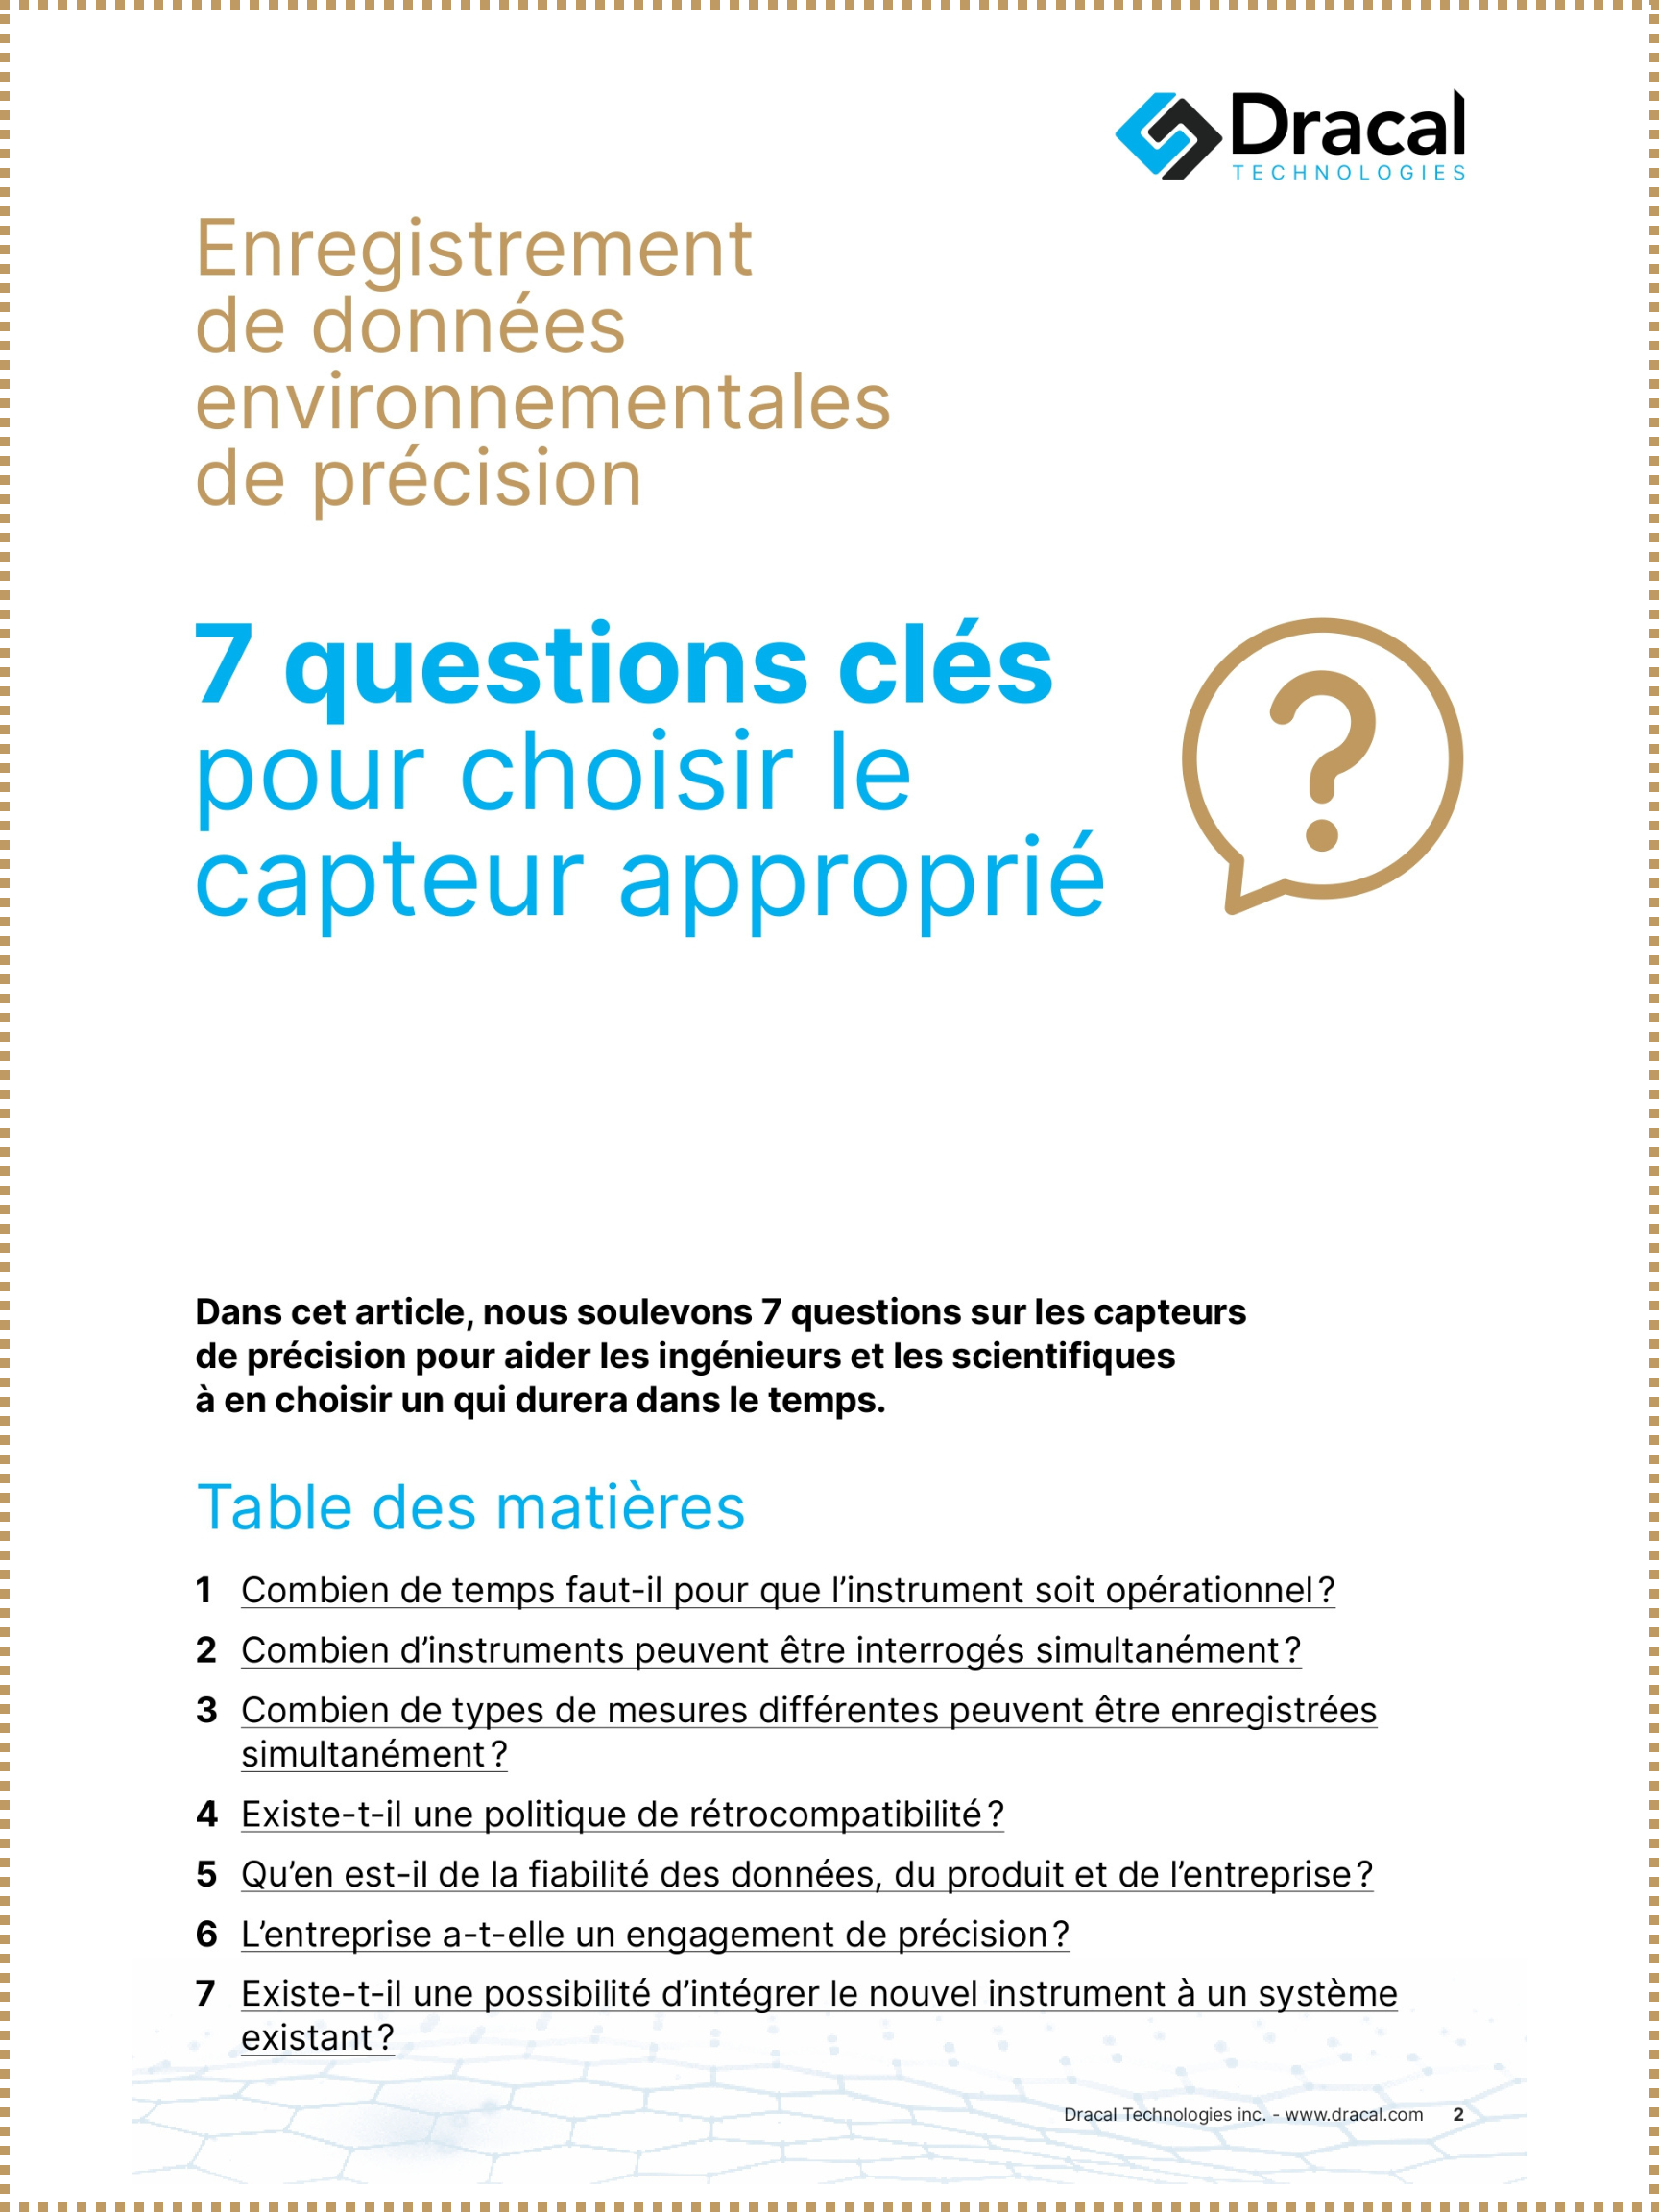 Page couverture et table des matières du livre blanc à propos de 7 questions pour choisir le capteur approprié